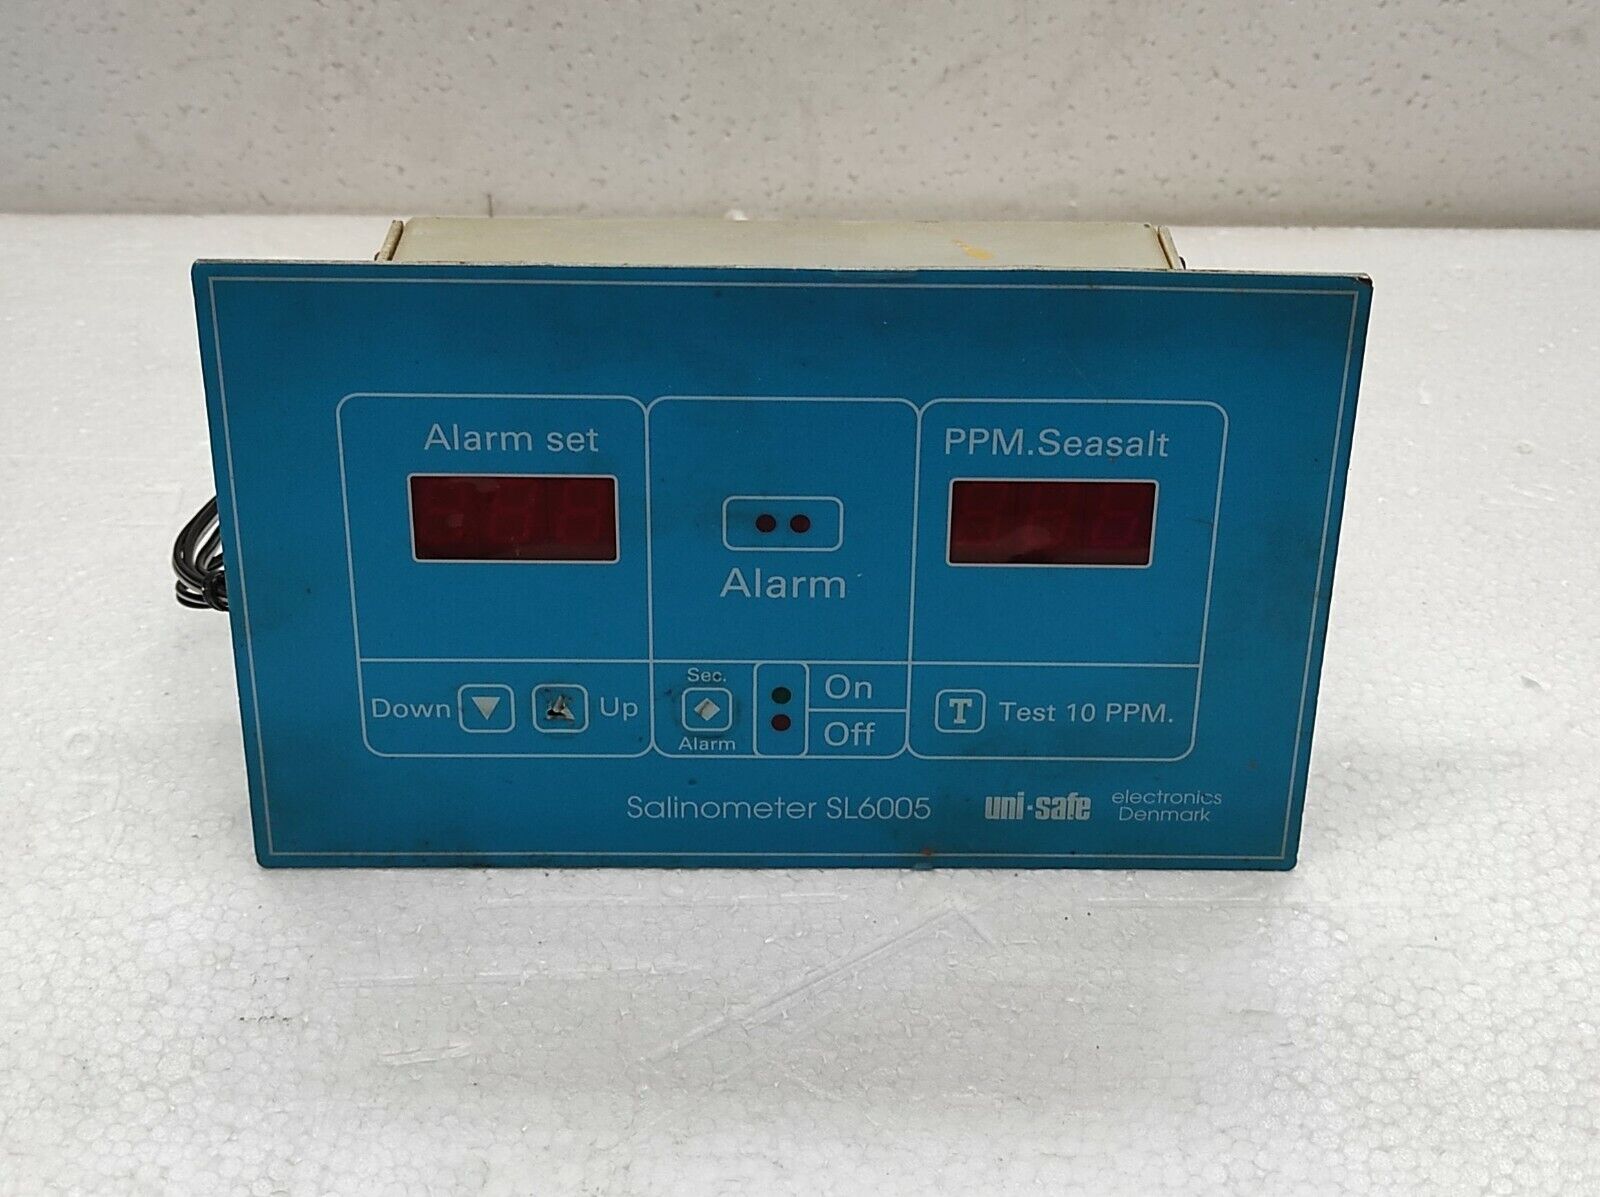 Uni-Safe Electronics Salinometer SL6005